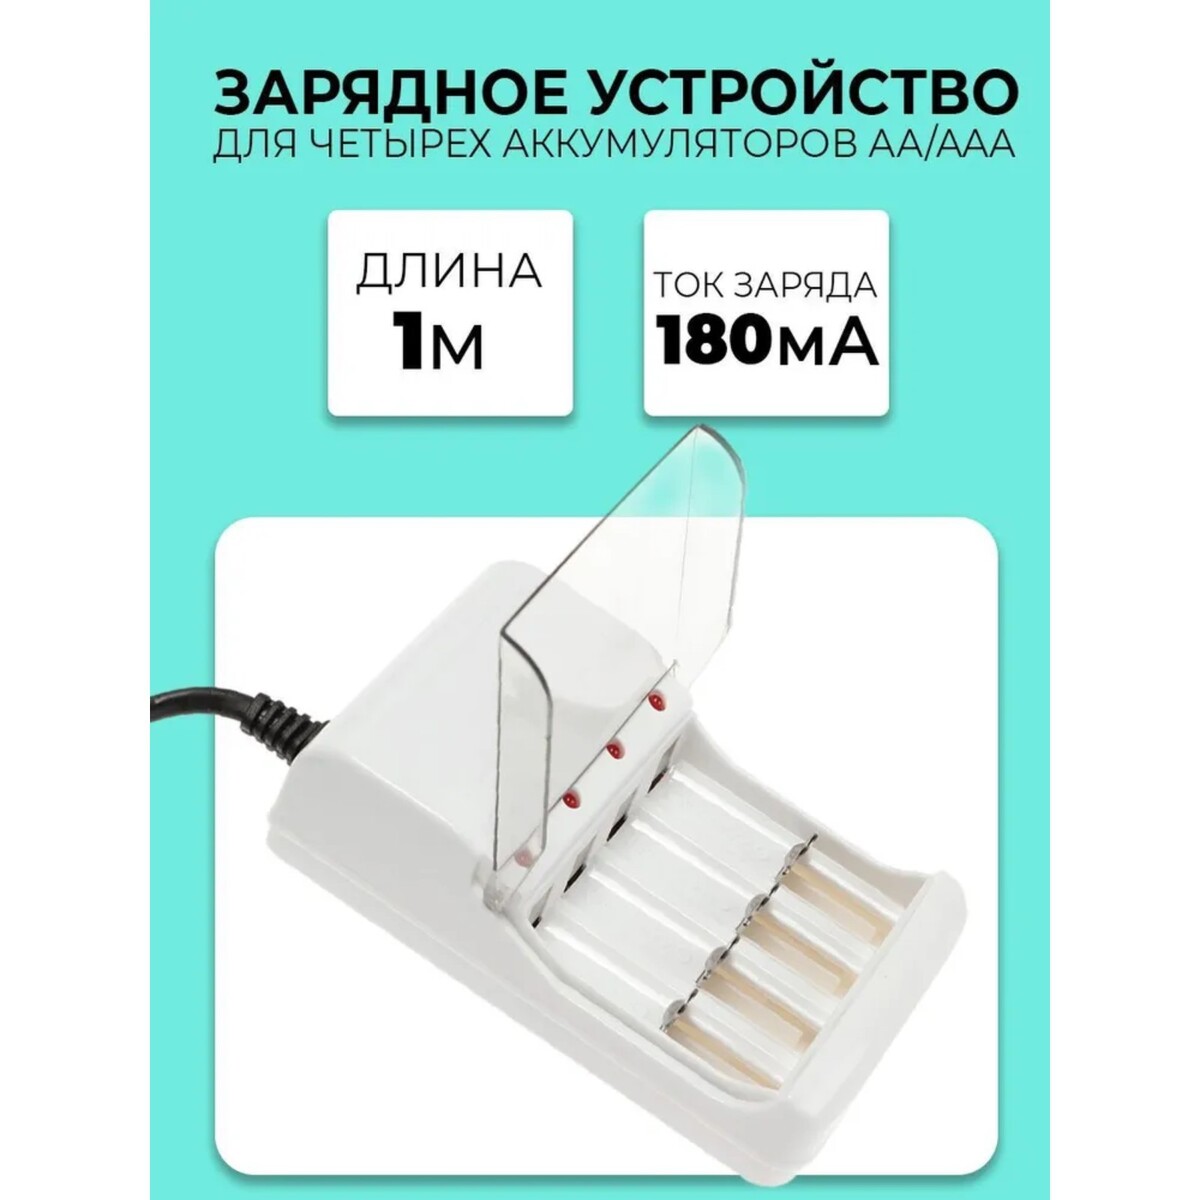 Зарядное устройство для четырех аккумуляторов аа или ааа chr-56, 1 м,ток заряда 180 ма,белое беспроводное зарядное устройство mobility mt 32 fast charge белое